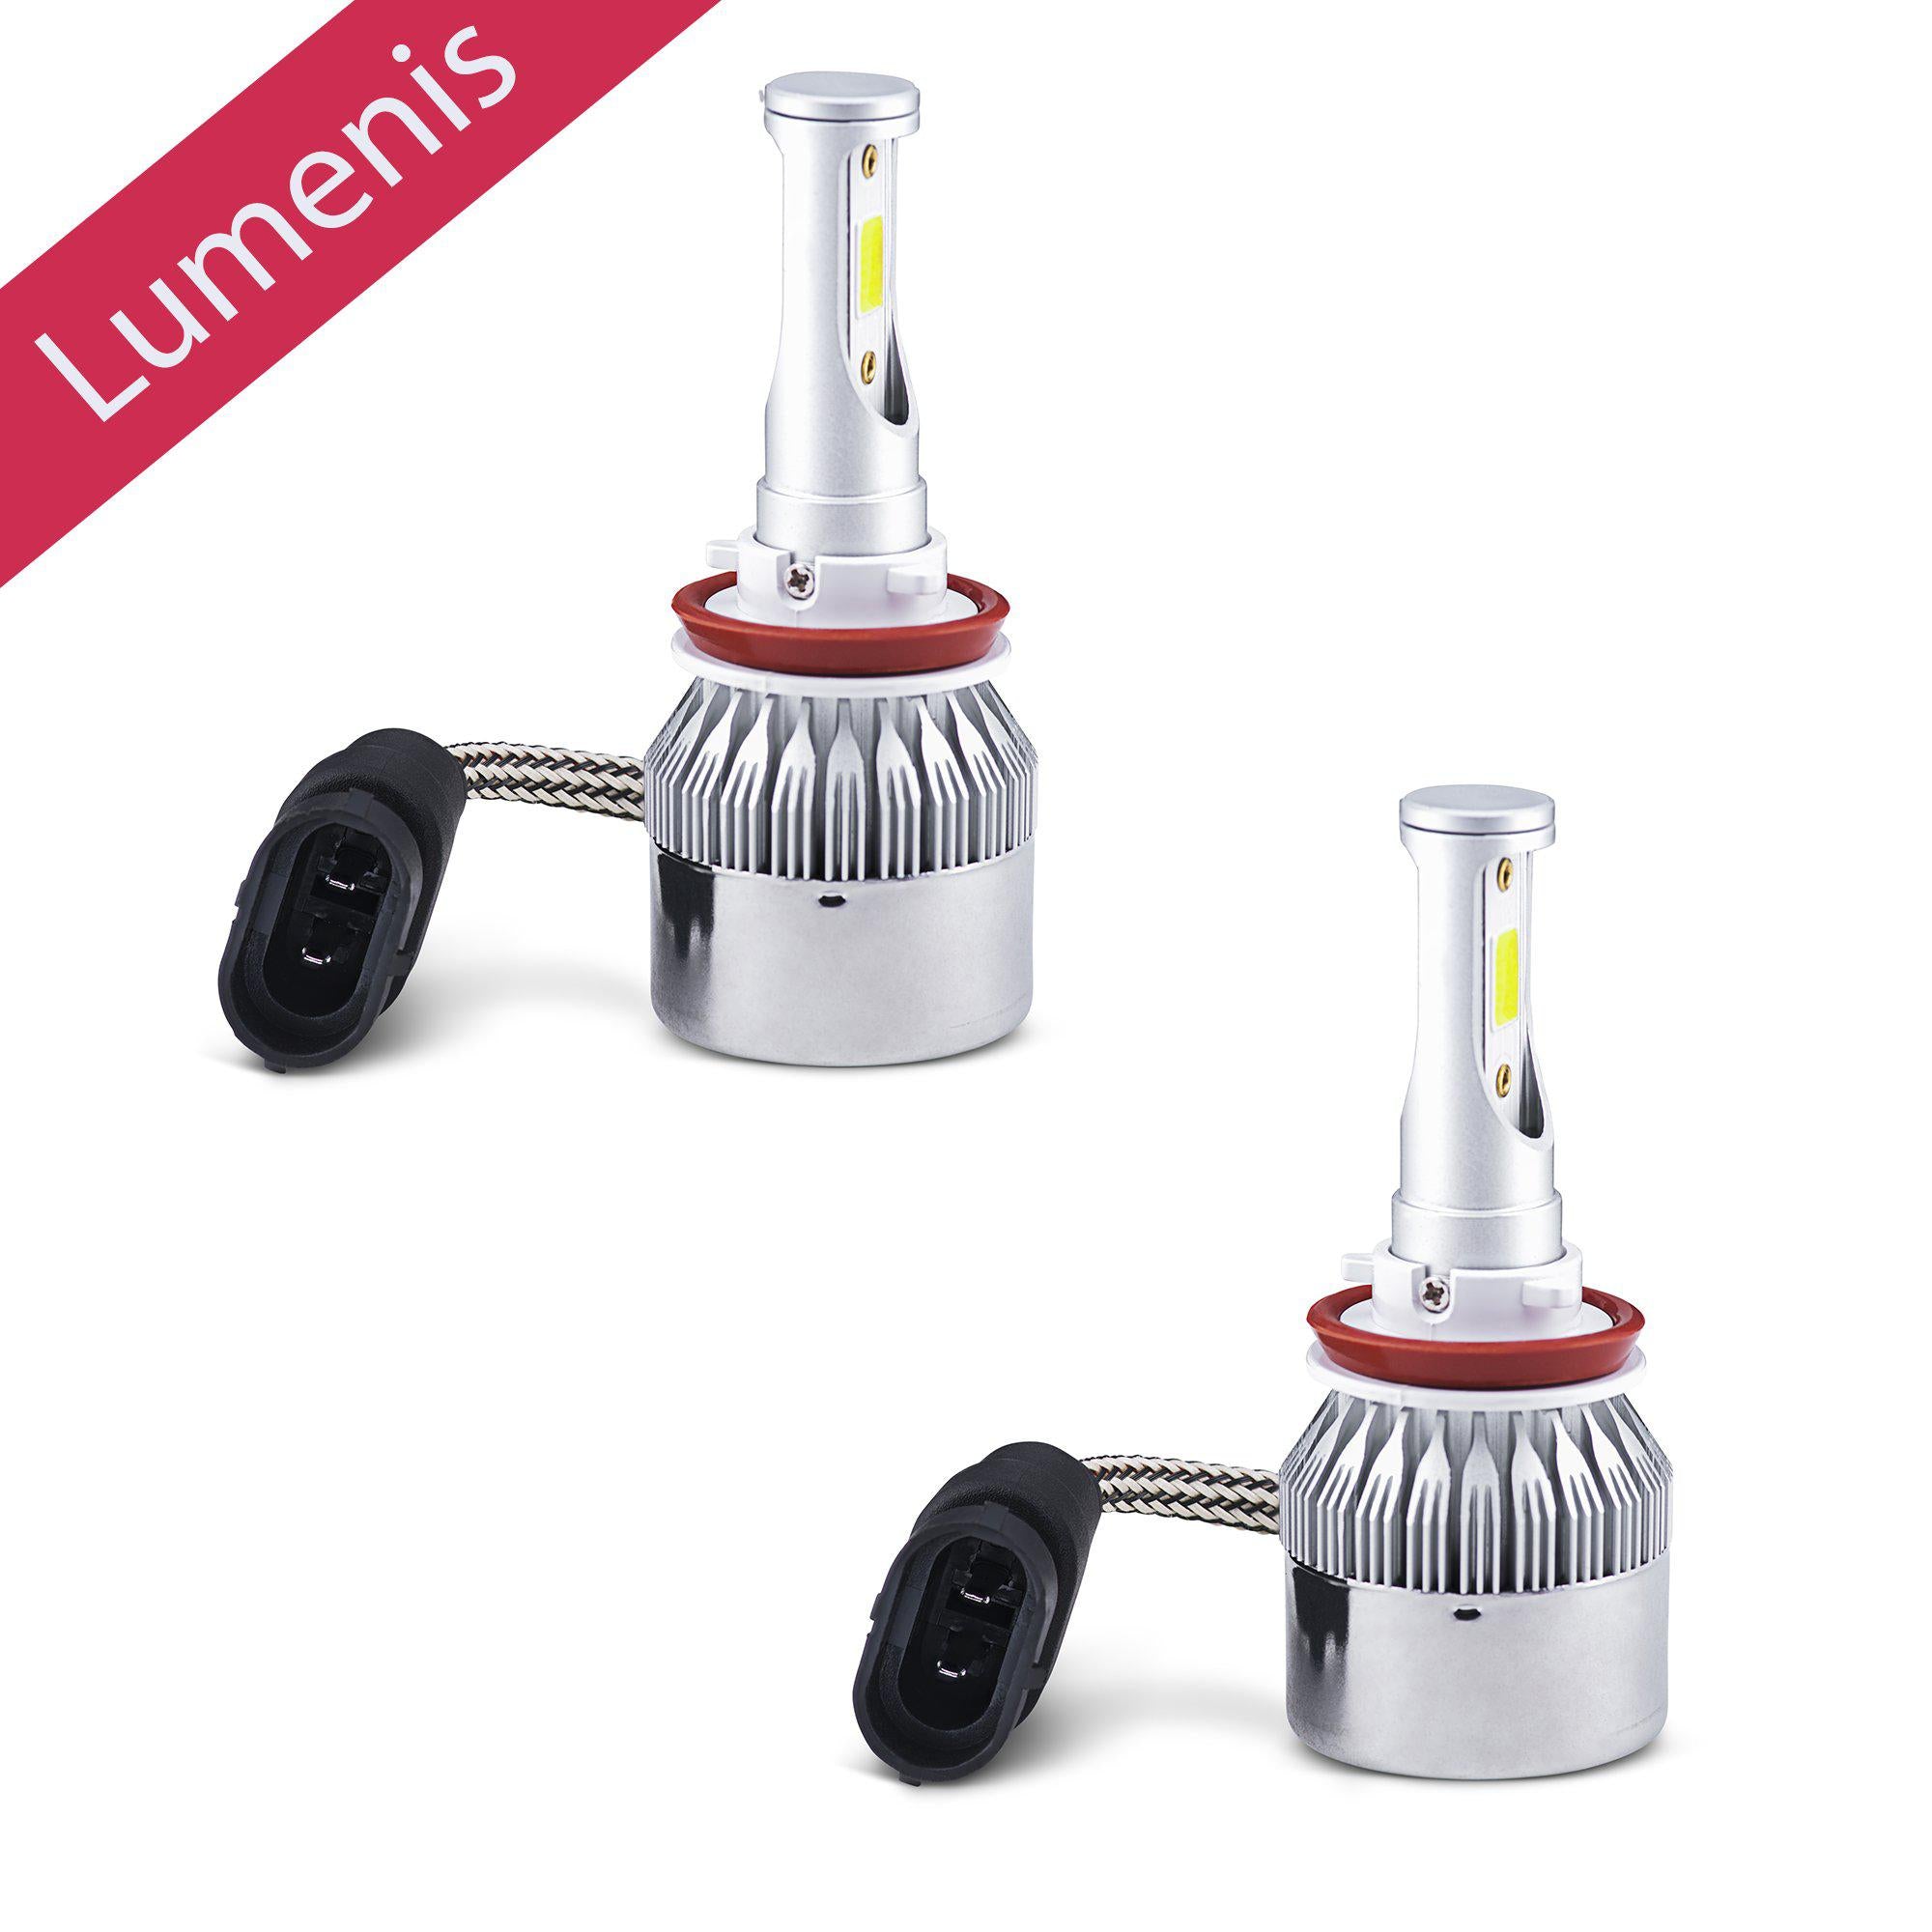 9005 LED Headlight Conversion Kit-9005-Ledlightstreet